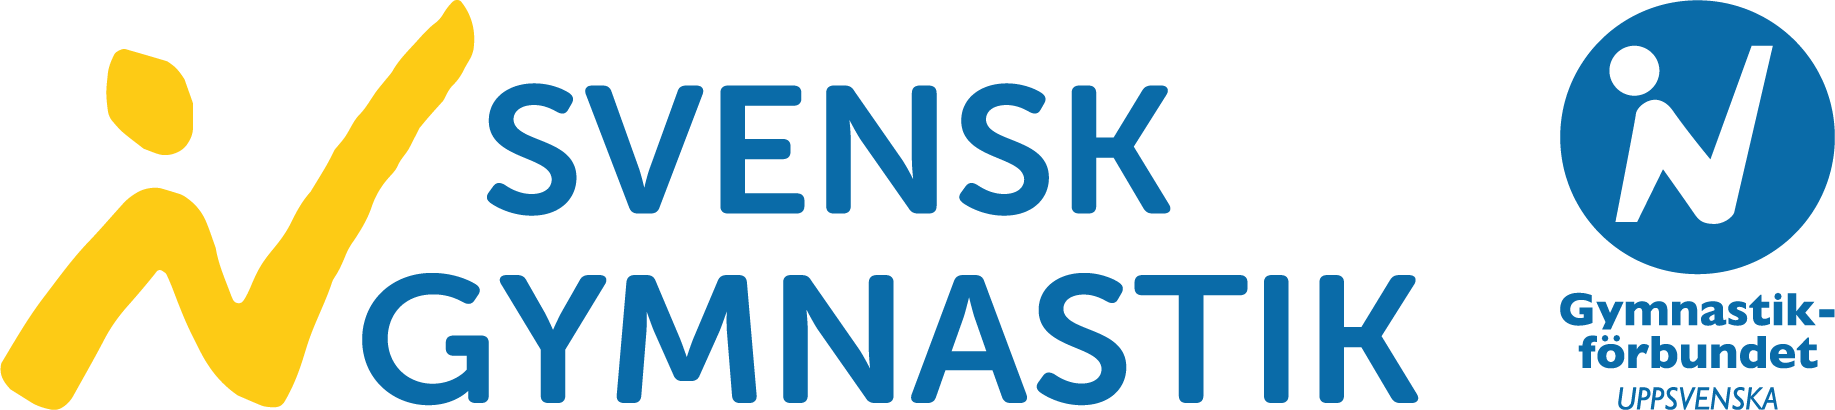 Gymnastikförbundet Uppsvenska logga